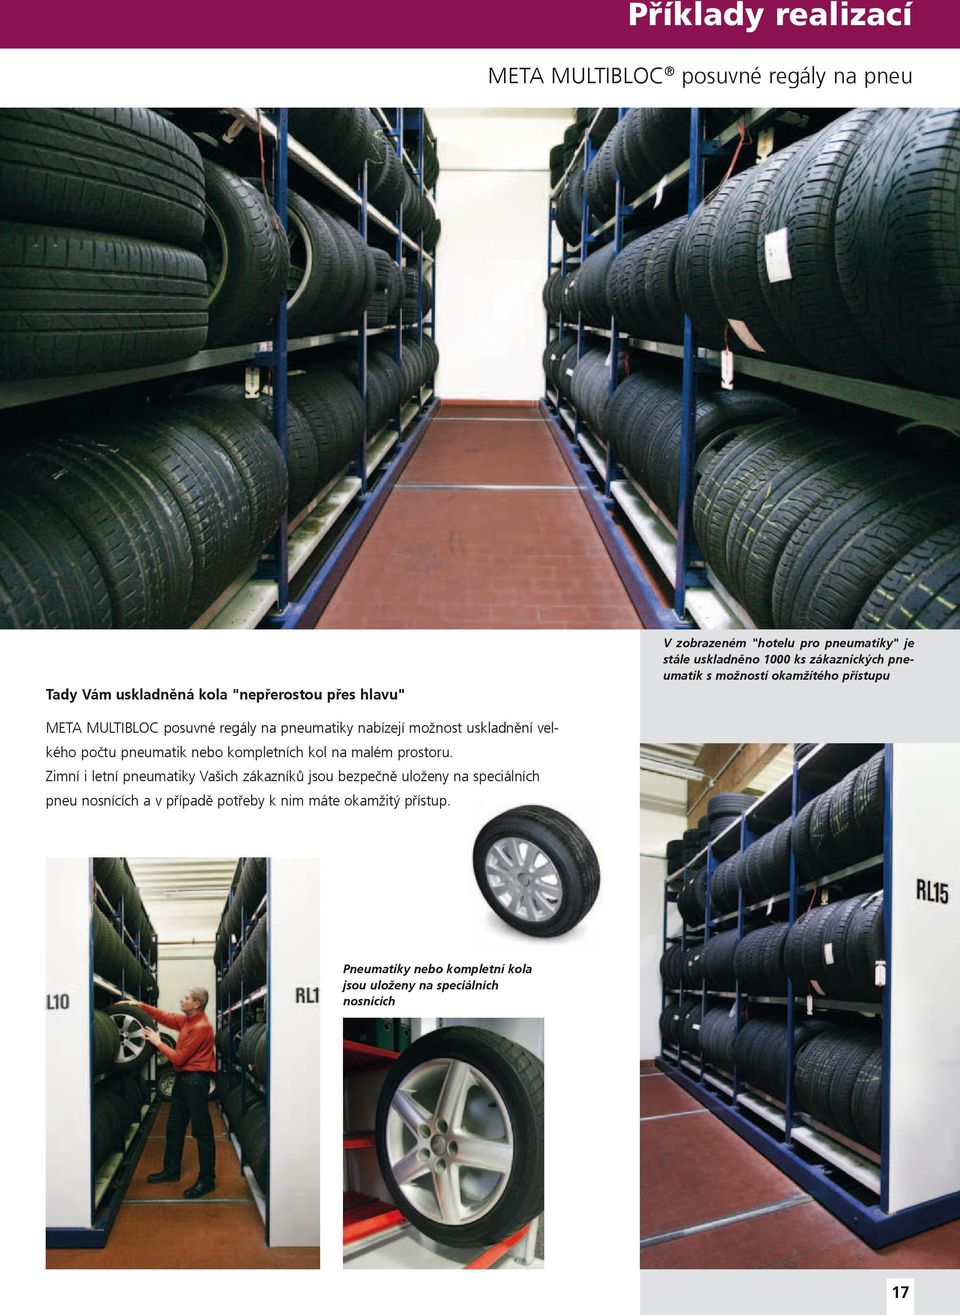 uskladnění velkého počtu pneumatik nebo kompletních kol na malém prostoru.